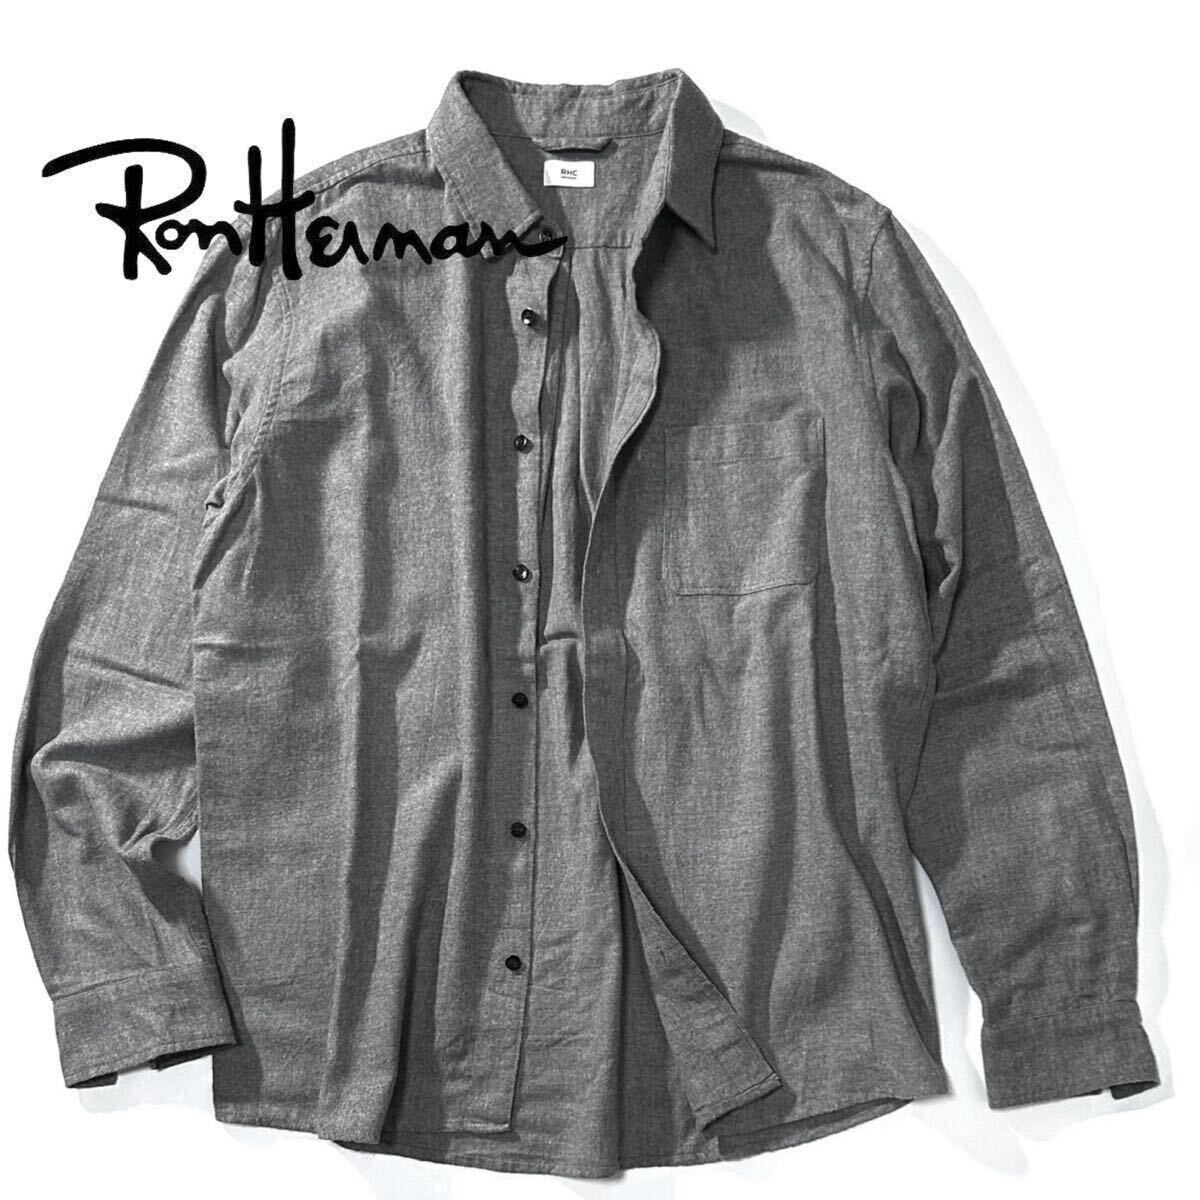 【Ron Herman】シンプルさが光る大人好みの上質ネルシャツ◎!!RHC ロンハーマン レギュラーカラーフランネルシャツ LSコットングレーシャツの画像2